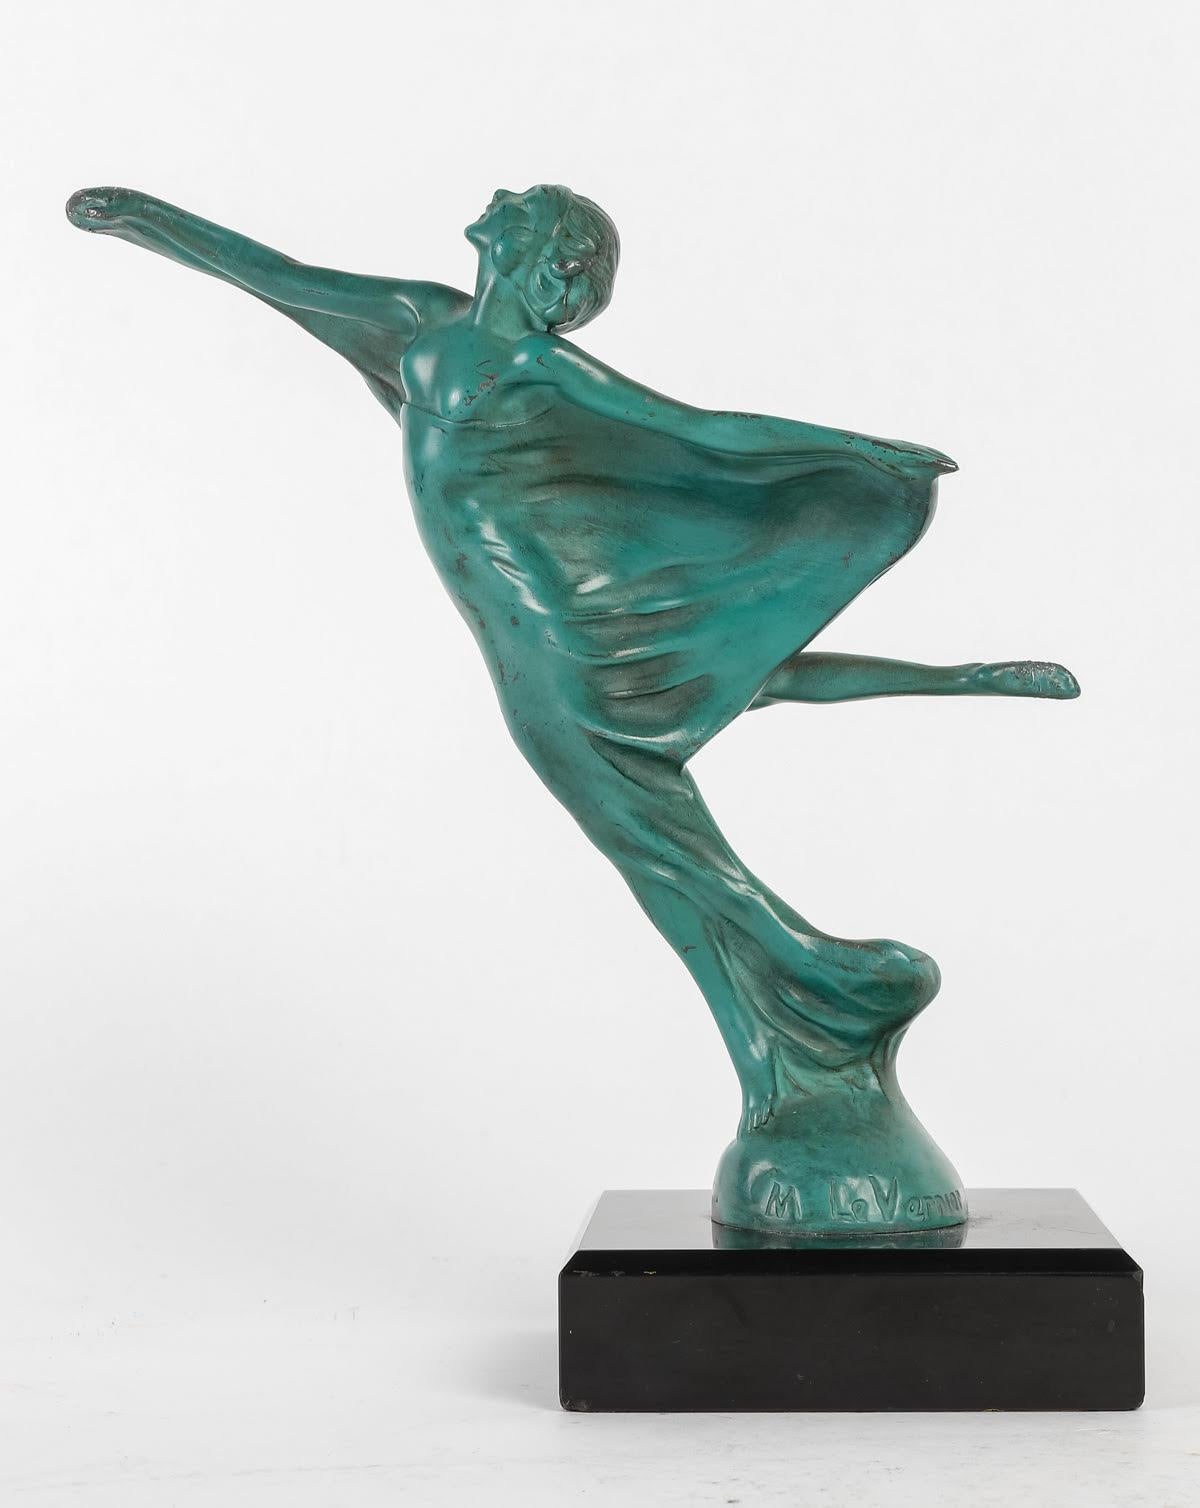 Bronze sculpture by Max Leverrier, circa 1930.

Art Deco sculpture by Max Leverrier, circa 1930, marble base, green patina.
H: 20cm, W: 19cm, D: 9cm